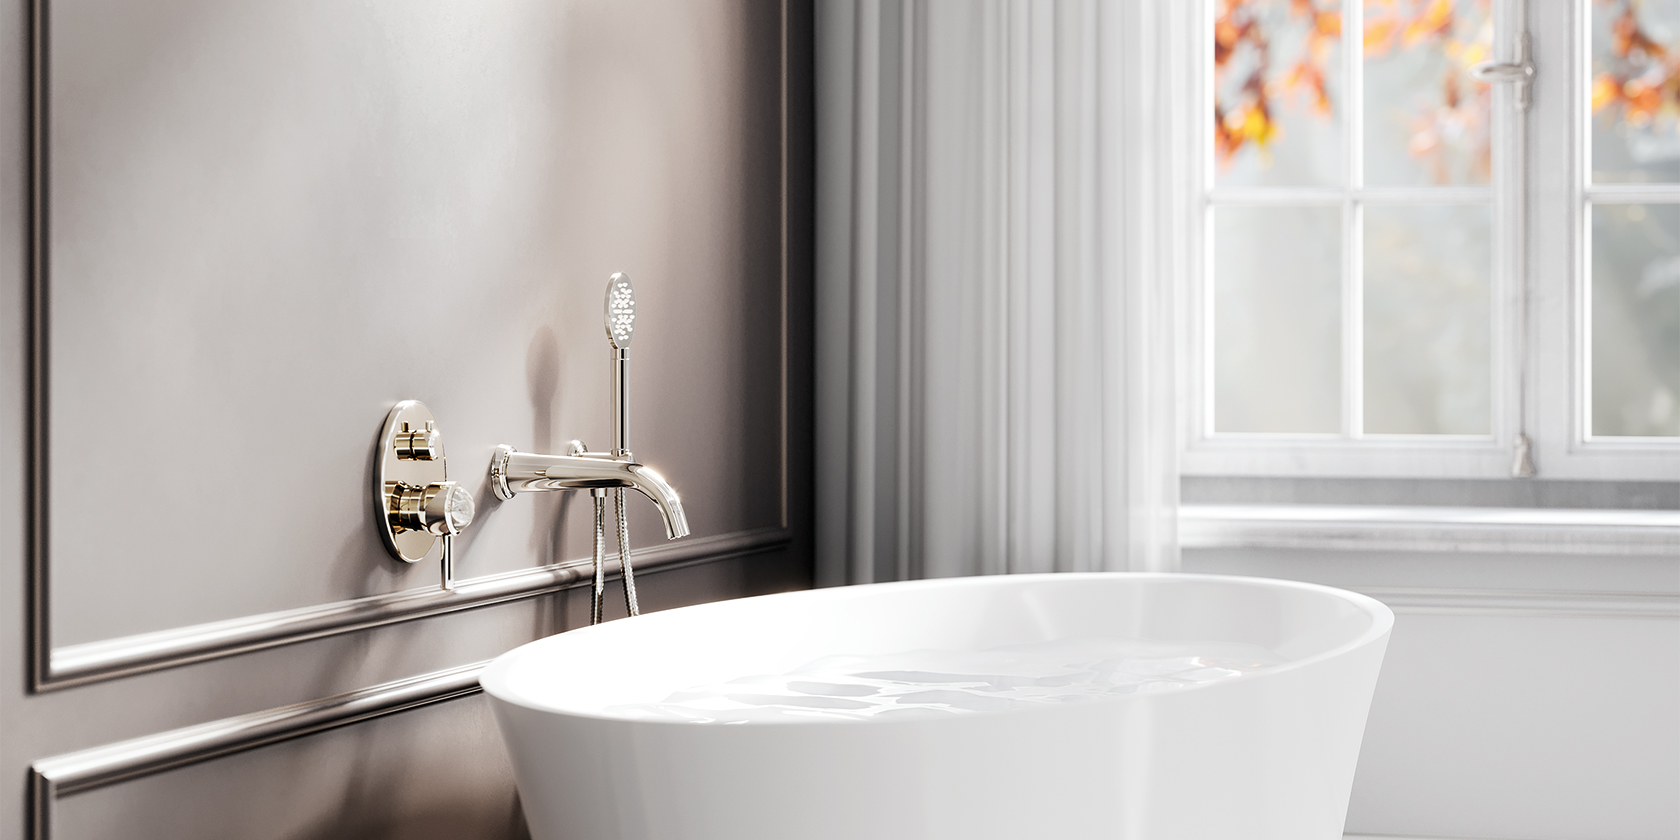 Классическая элегантность Belledor в сиянии перламутра – Новый образ ванной комнаты от команды Jörger Design